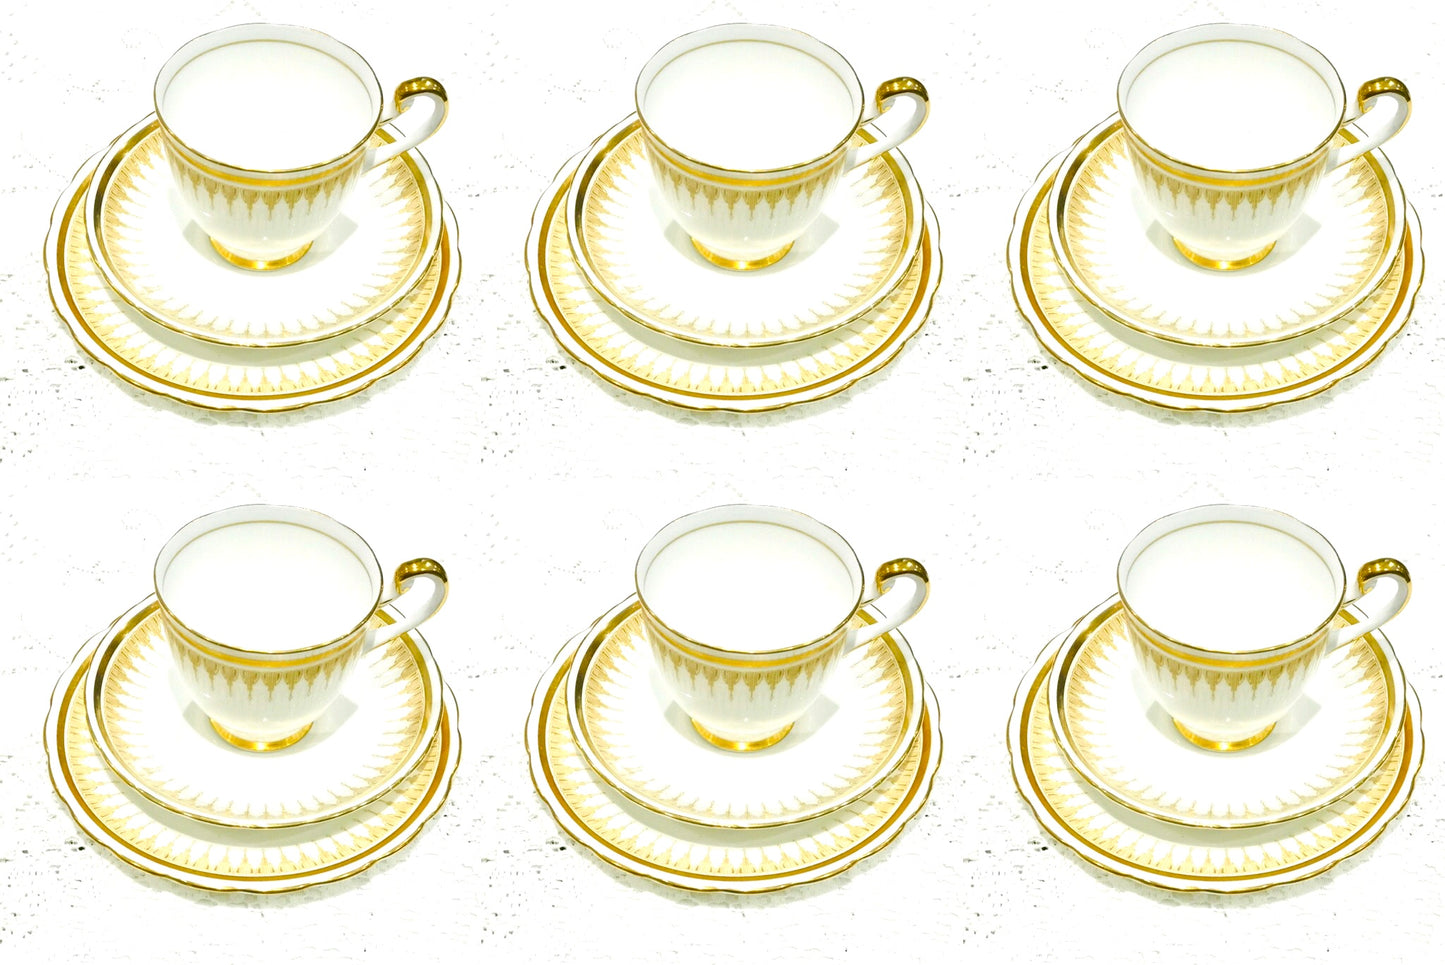 Nuevo juego de té Chelsea color crema y dorado